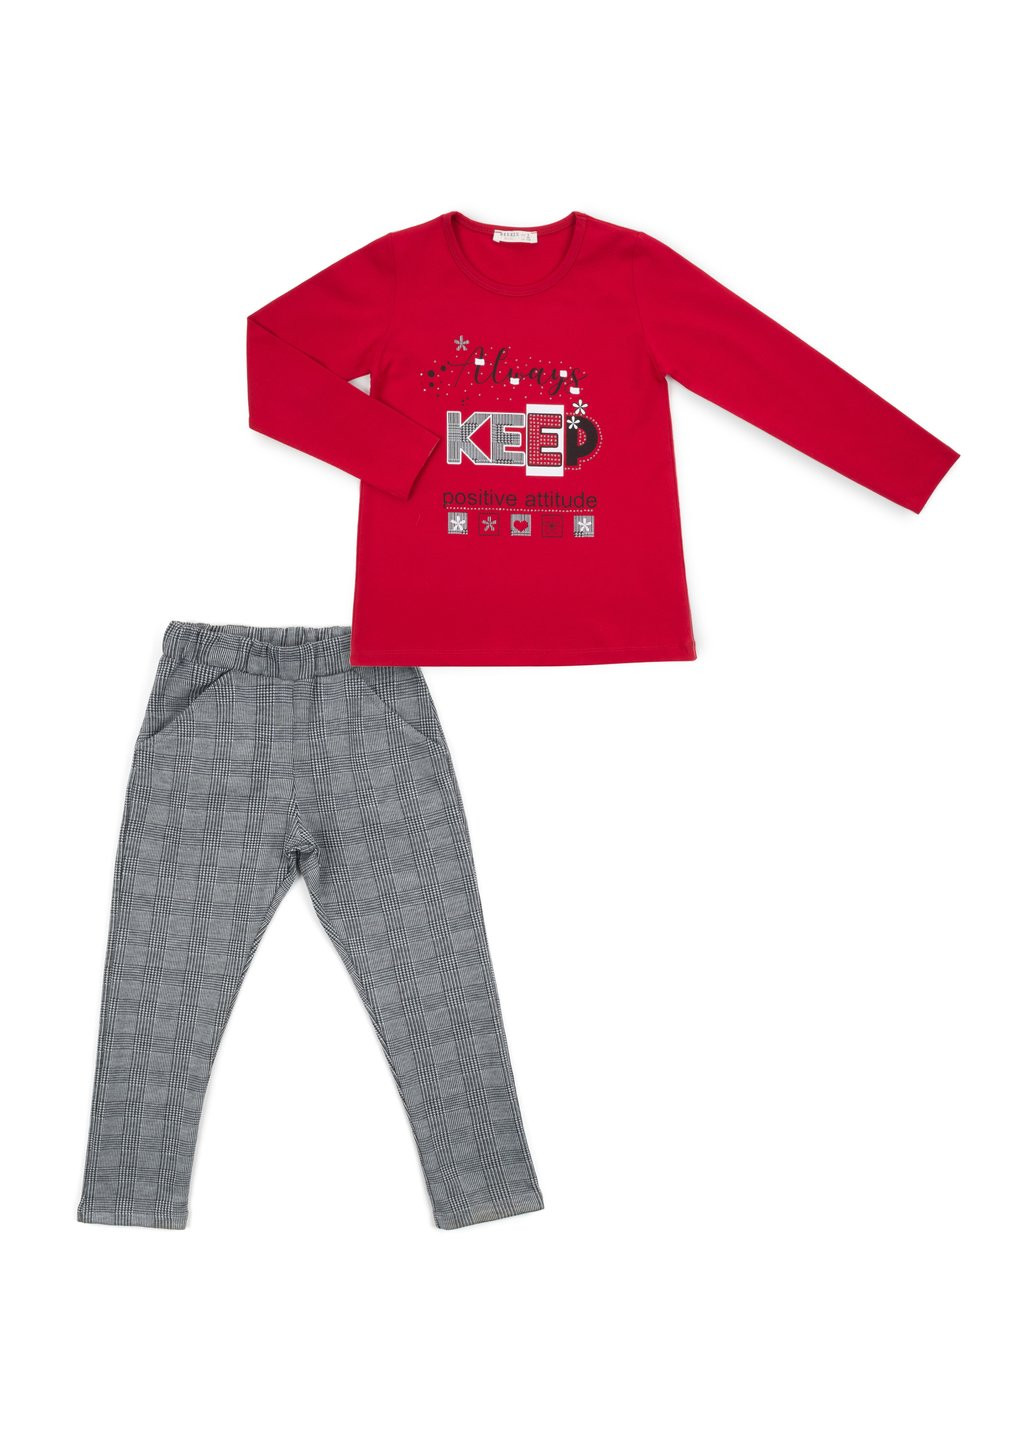 Комбинированный демисезонный набор детской одежды "always keep positive attitude" (13591-116g-red) Breeze